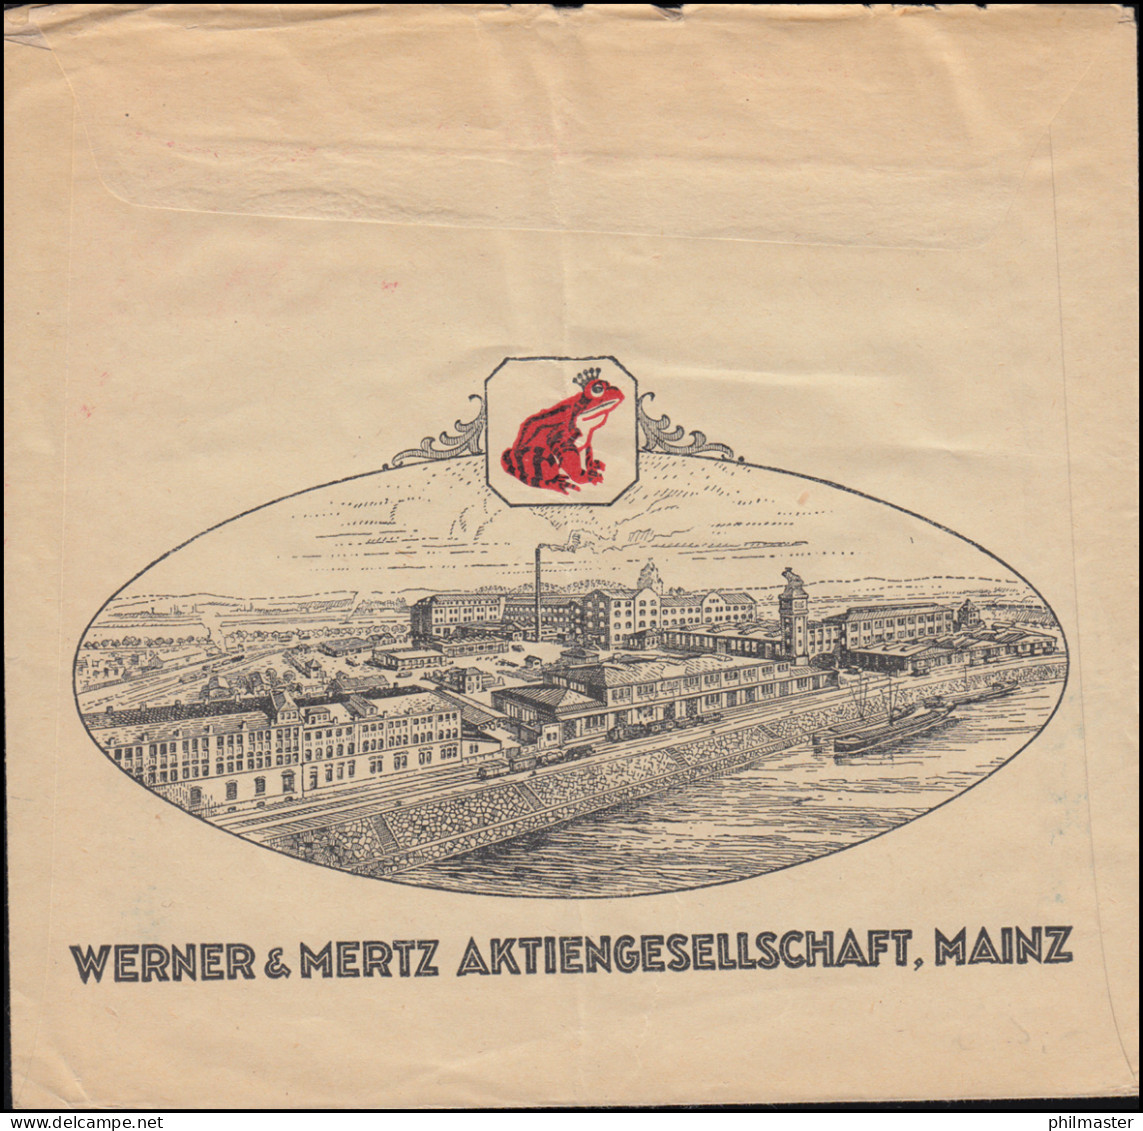 AFS Erdalfabrik Werner & Mertz MAINZ 27.12.1927 Auf Fensterbrief - Textil